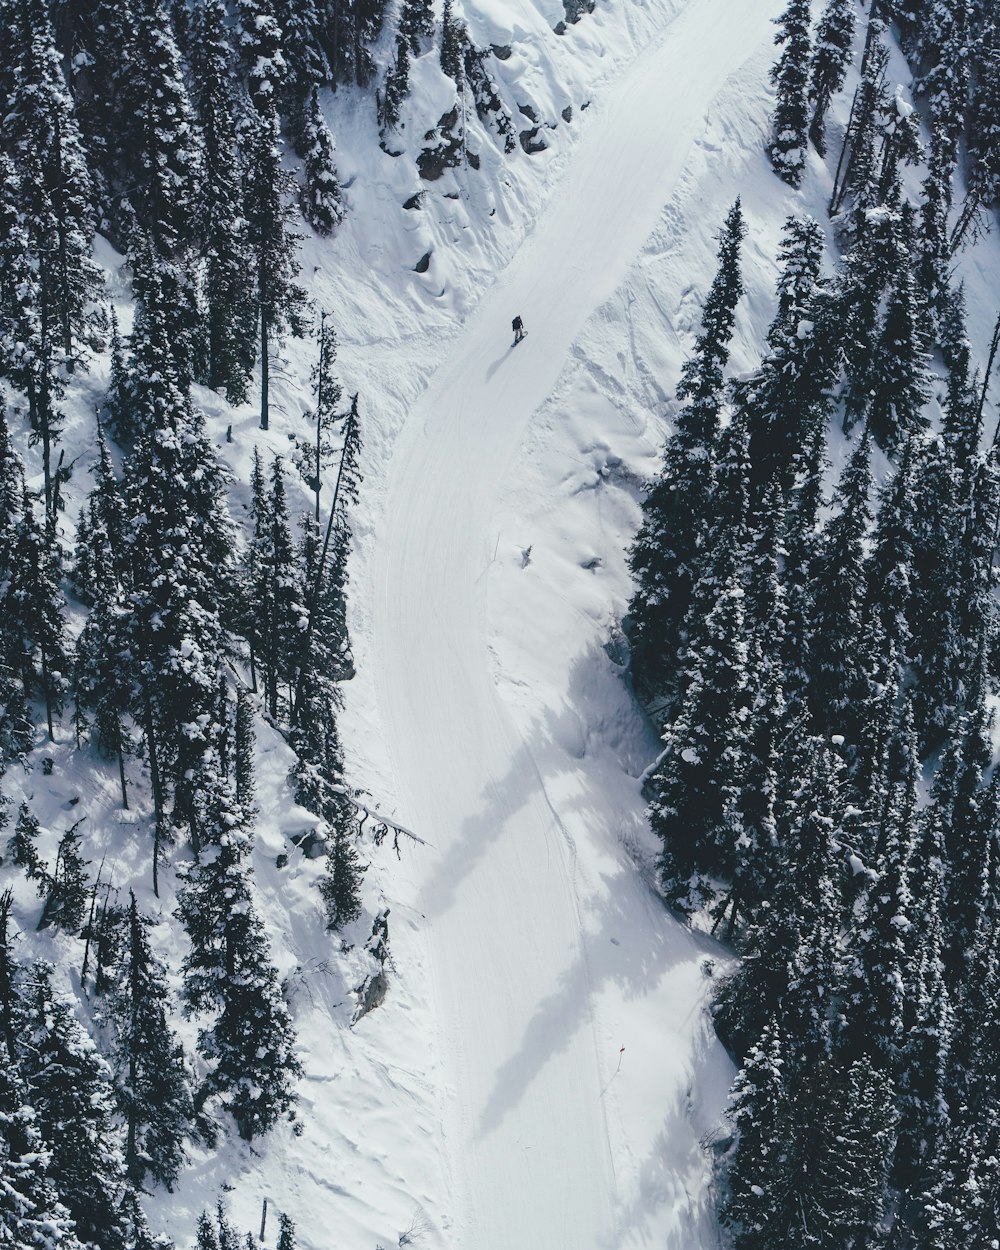 설산에서 스키를 타는 사람의 항공 사진\